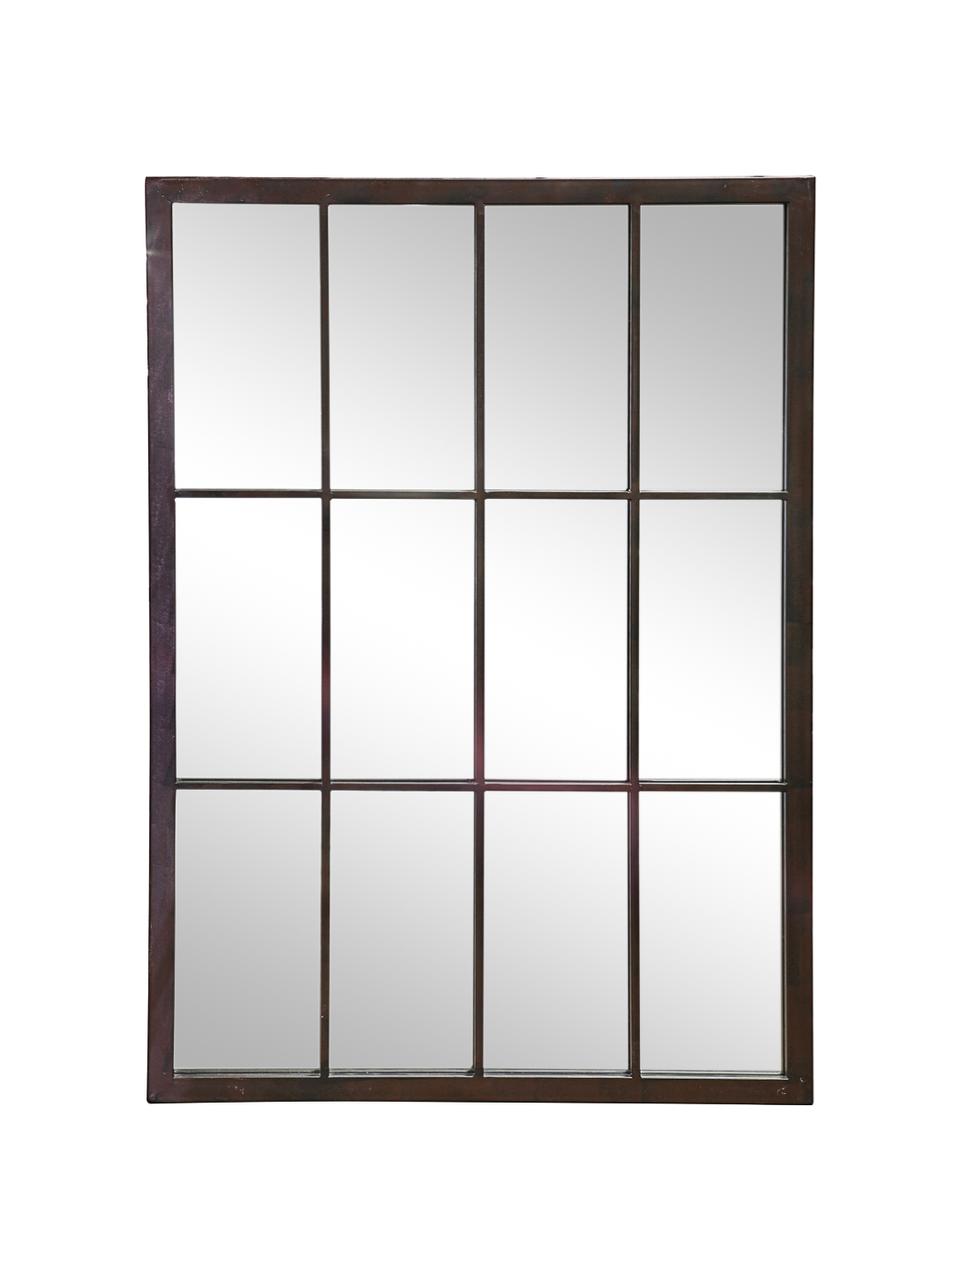 Eckiger Wandspiegel Zanetti mit schwarzem Metallrahmen , Rahmen: Metall, lackiert, Spiegelfläche: Spiegelglas, Schwarz, B 50 x H 70 cm